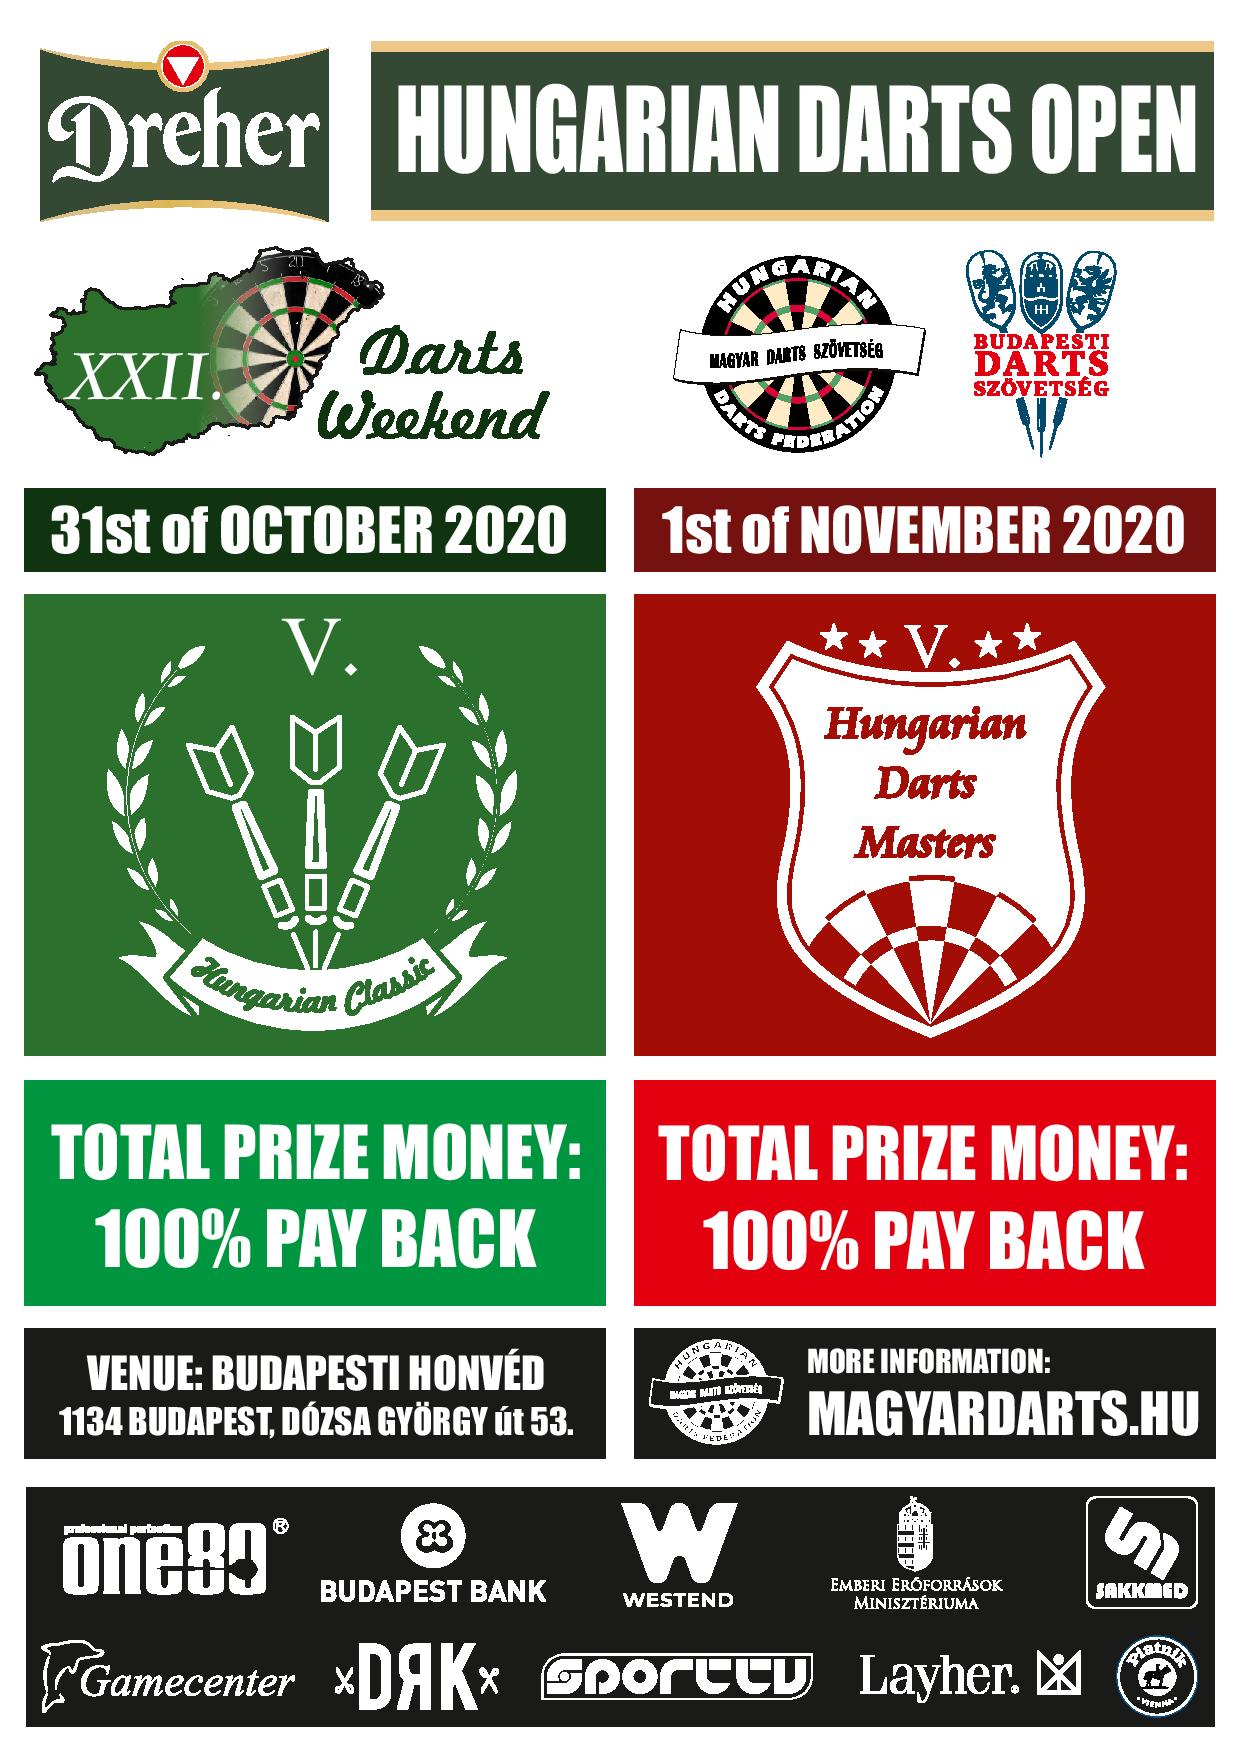 KÖZLEMÉNY a 2020-as Hungarian Darts Opennel kapcsolatban A Magyar Darts Szövetség szeretne tájékoztatni mindenkit arról, hogy szándékában áll megrendezni a XXII. Hungarian Darts Opent, a sportág nemzetközi ünnepének hétvégéjét Budapesten. A legfontosabb információk megtalálhatóak a fenti szórólapon, a részletes szabályokat hamarosan publikáljuk a hivatalos honlapunkon. Bár – a nemzetközi járványhelyzet miatt – ez a verseny nem ad pontokat a WDF (vagy BDO) világranglistáján, a Magyar Darts Szövetség szívesen lát játékosokat a világ bármely szegletéből e nagyszabású rendezvényén. Természetesen minden szükséges óvintézkedést megteszünk a résztvevők egészségének védelmében. Ha szükséges, készek vagyunk meghívóleveleket kiküldeni a játékosok problémamentes utazása érdekében. Abban az esetben, ha szükségetek van ehhez bármilyen segítségre, lépjetek kapcsolatba velünk az office@magyardarts.hu e-mail-címen! Végezetül engedjétek meg, hogy jó előre jelezzük, mindent elkövetünk annak érdekében, hogy 2021 márciusában megrendezhessük a Budapest Darts Opent, 2021 októberében pedig a Hungarian Darts Opent. További részletek hamarosan, figyeljétek hivatalos oldalainkat! Sportbarátsággal, a Magyar Darts Szövetség csapata